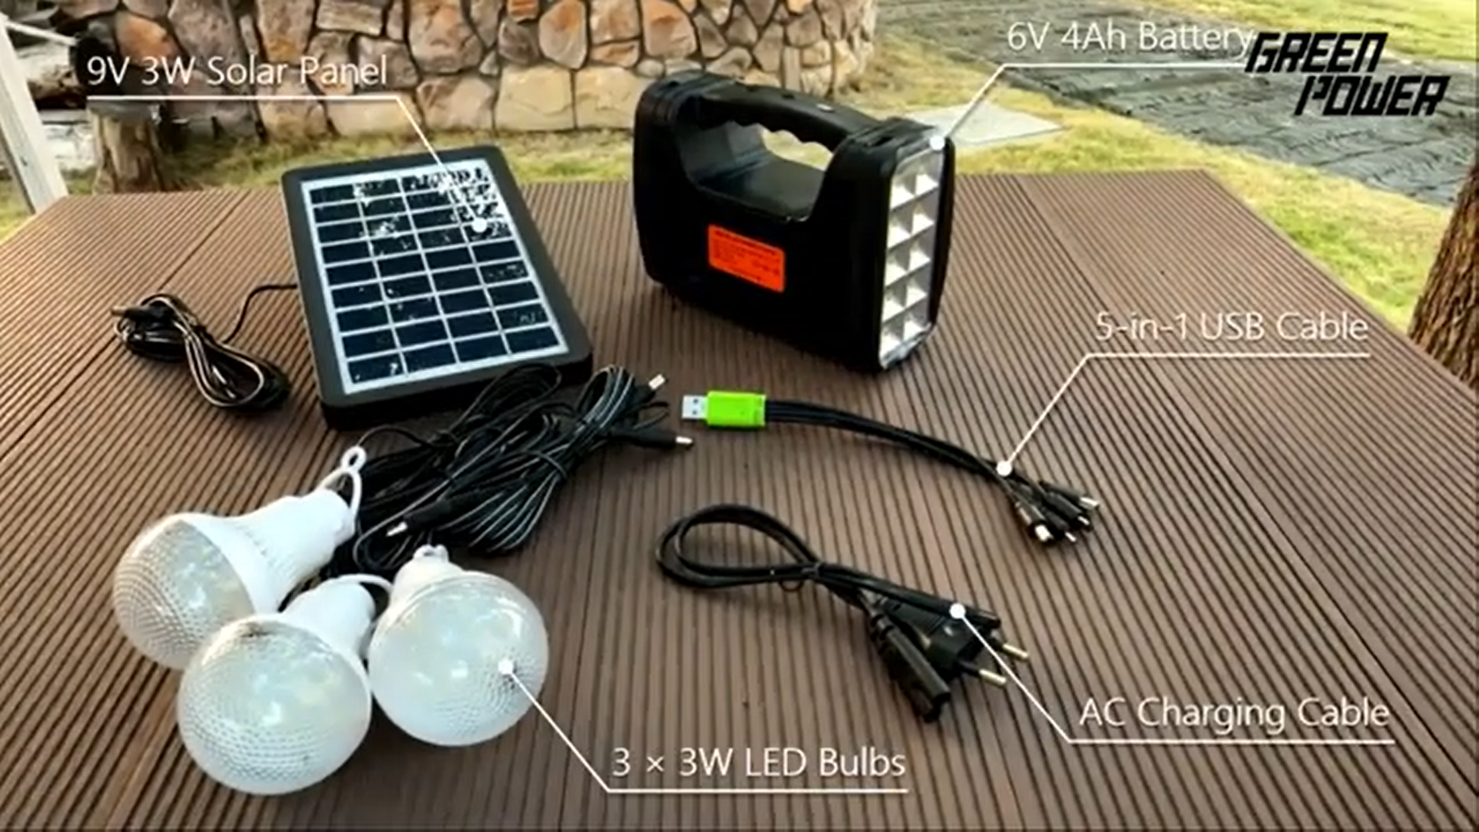 Kit di illuminazione solare mini GP 351: una soluzione semplice e rapida per illuminare le case prive di elettricità